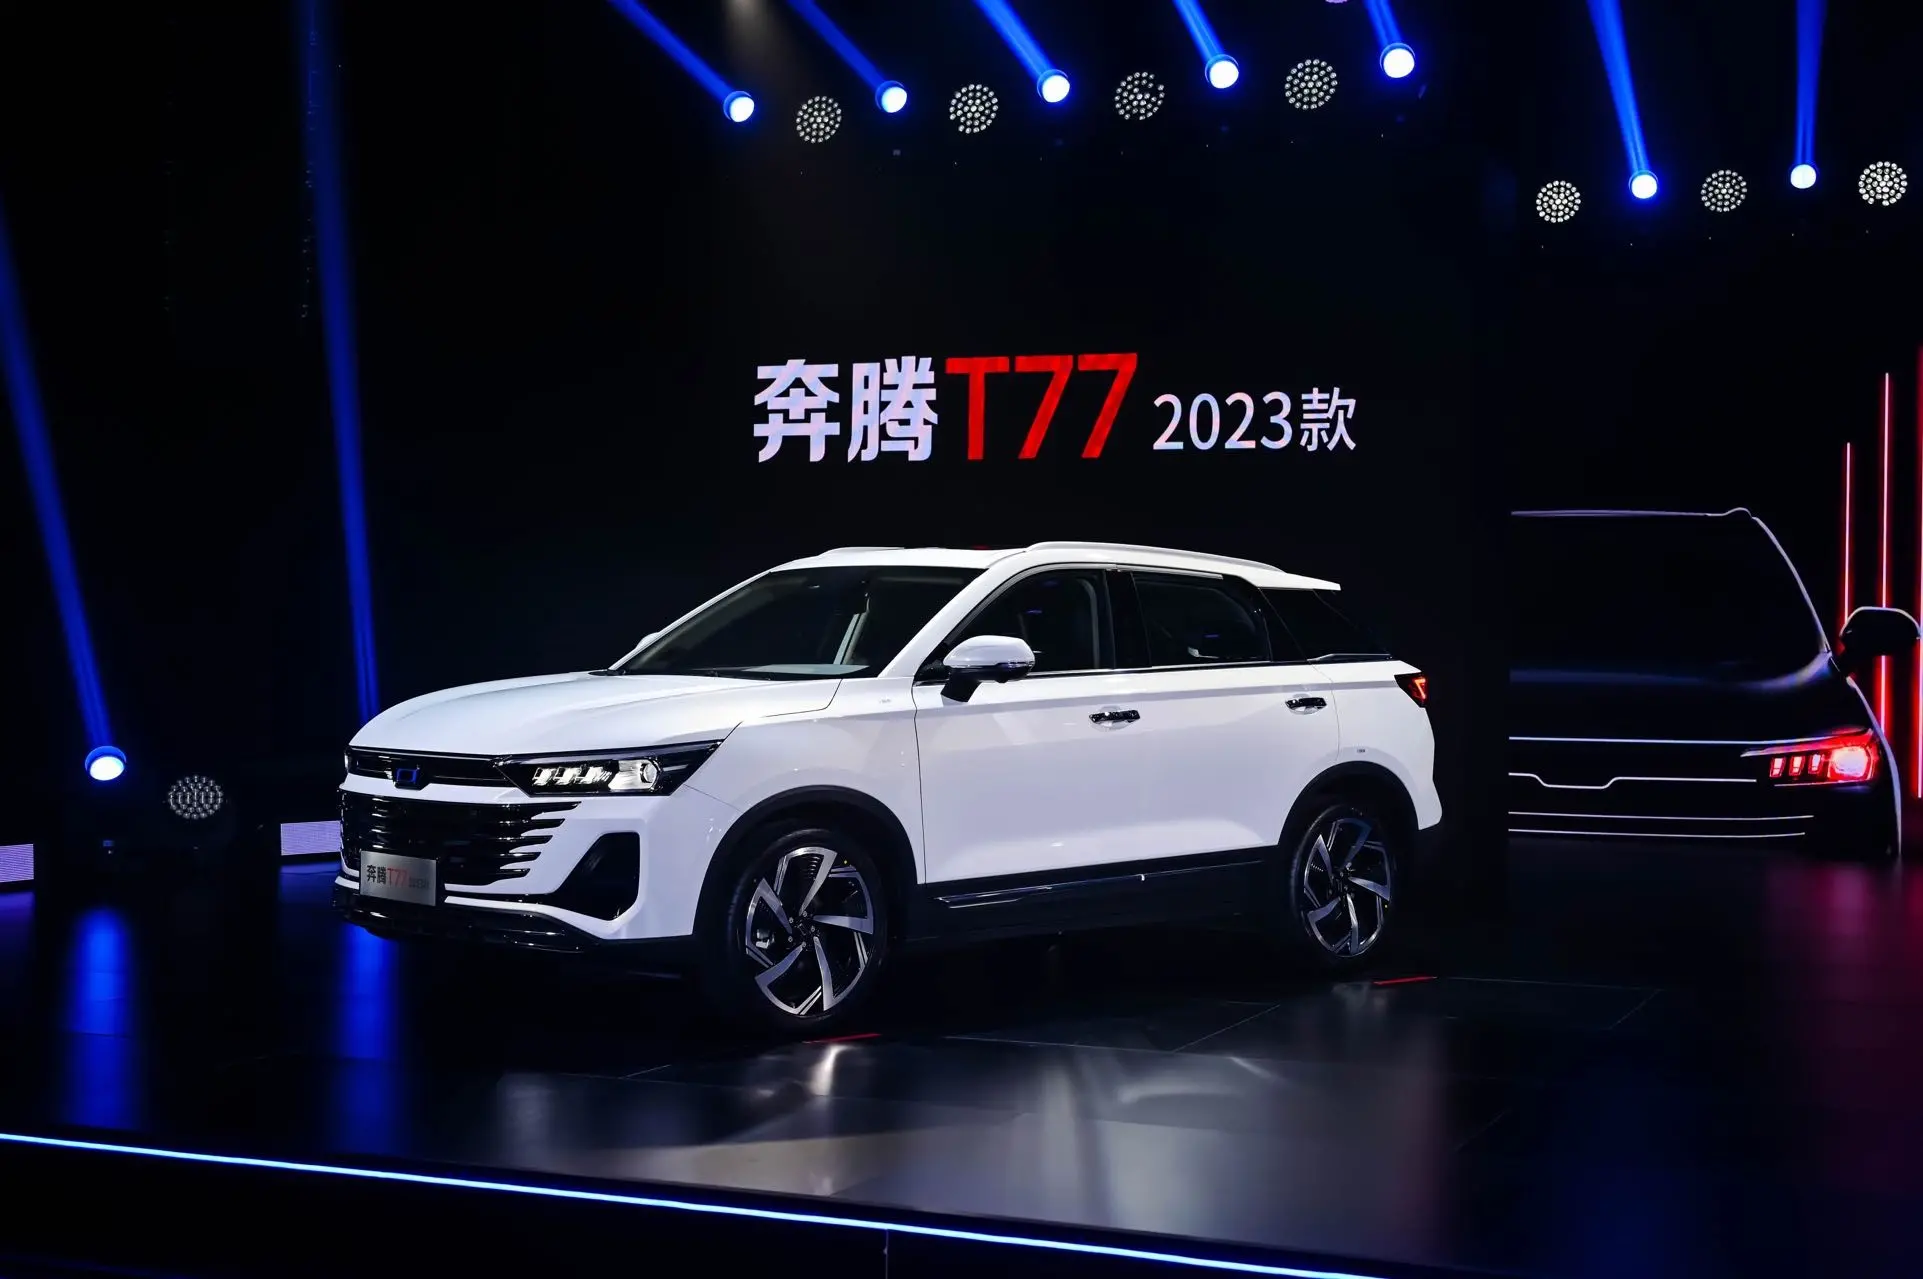 شبكة السيارات الصينية – تعرف على سيارة بيستون T77 الجديدة 2023 التي تم إطلاقها في الصين رسميًا